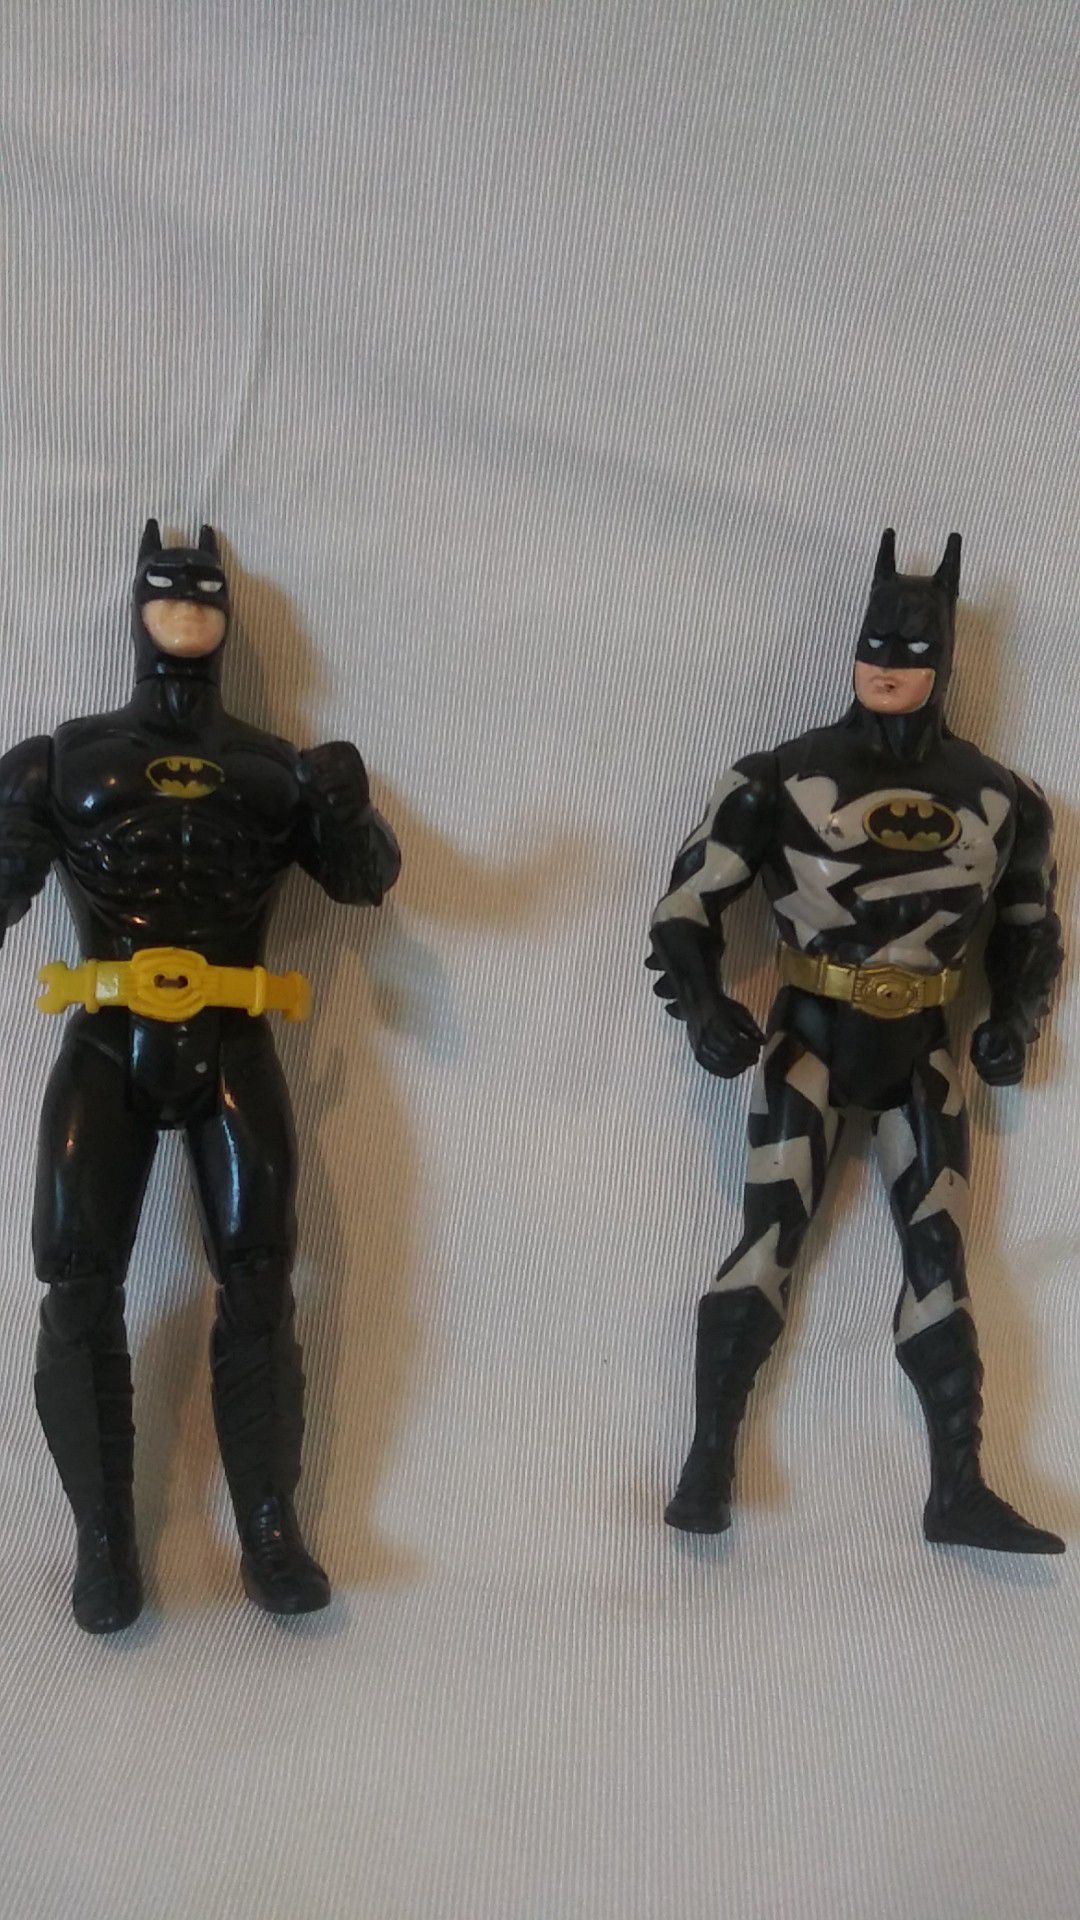 Vintage 1989 batman figures